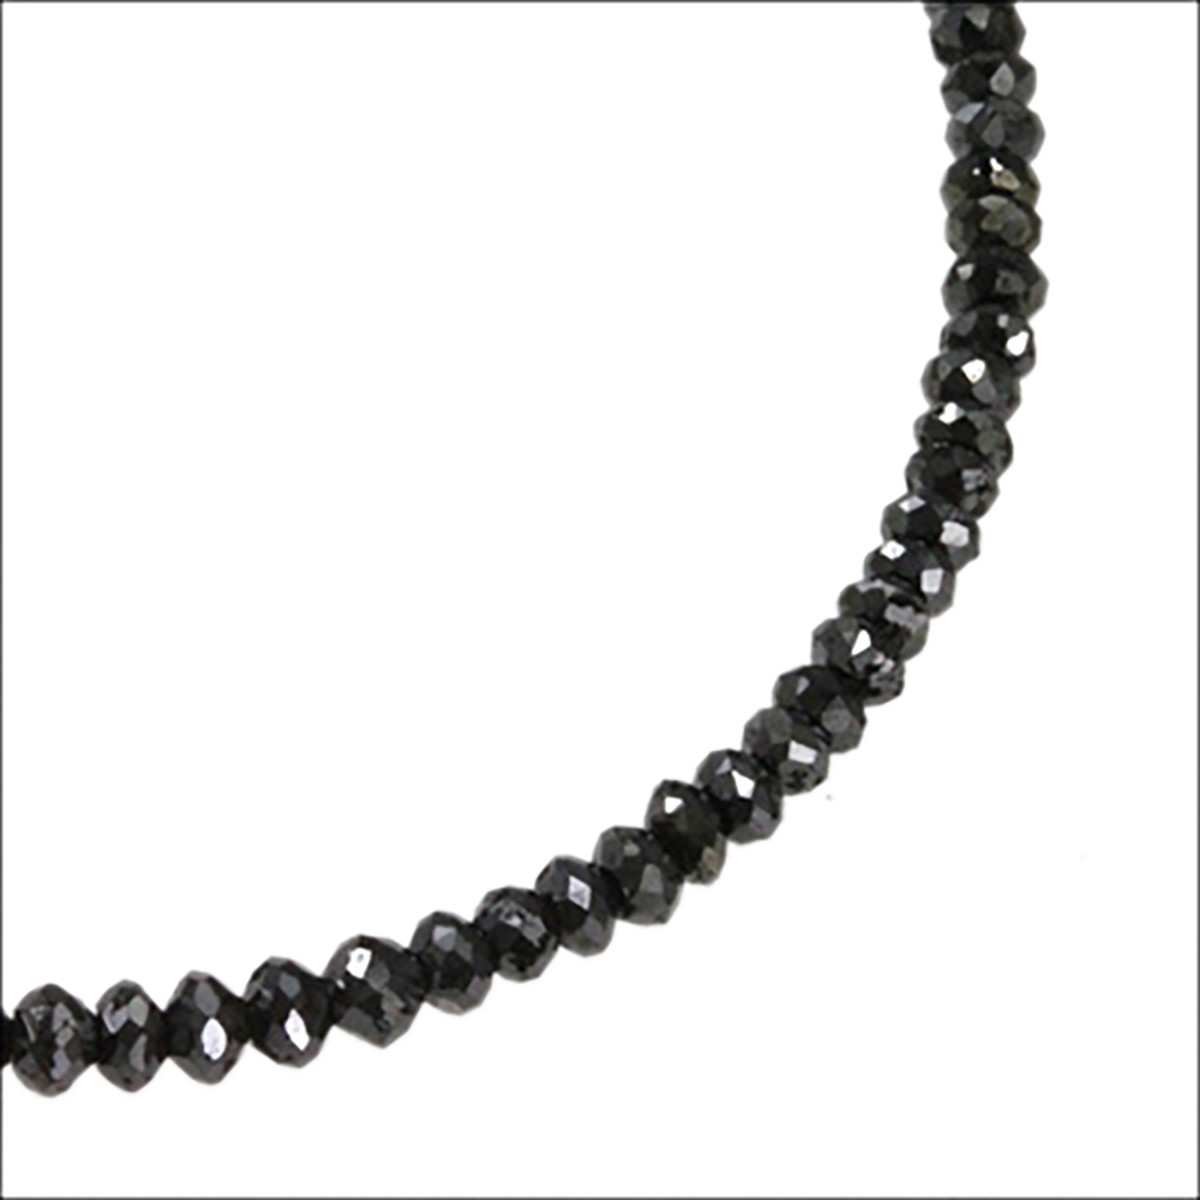 ネックレス 50 ブラックダイヤモンドネックレス ペンダントの人気商品 